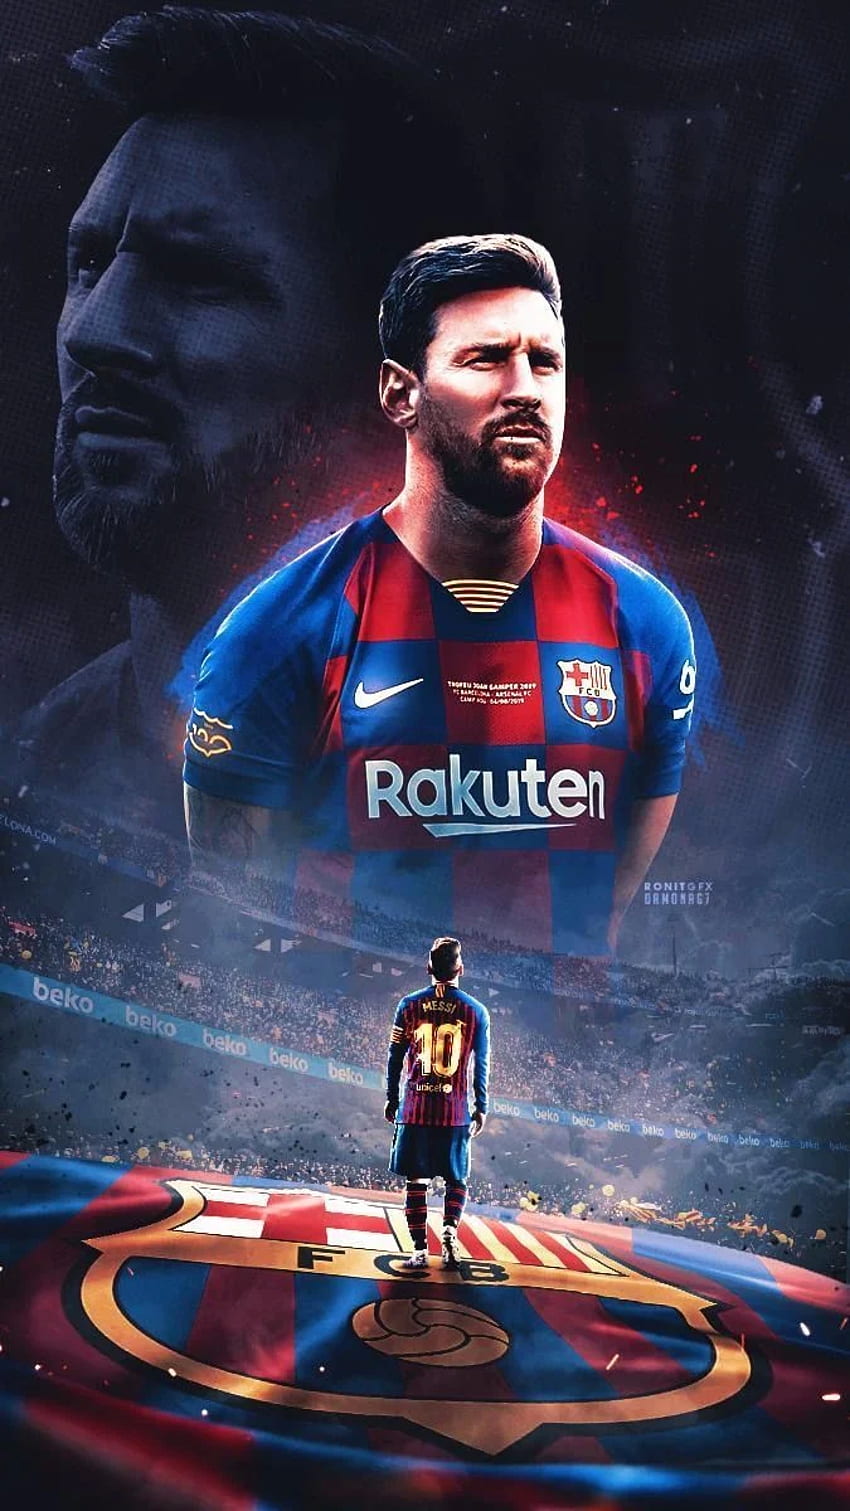 Những fan của Messi không chỉ đam mê bóng đá mà còn muốn trang trí cho chiếc điện thoại của họ với hình ảnh ấn tượng của ngôi sao bóng đá này. Hãy chọn Messi Football iPhone wallpaper với chất lượng HD cao cho độ nét hoàn hảo trên màn hình điện thoại của bạn.